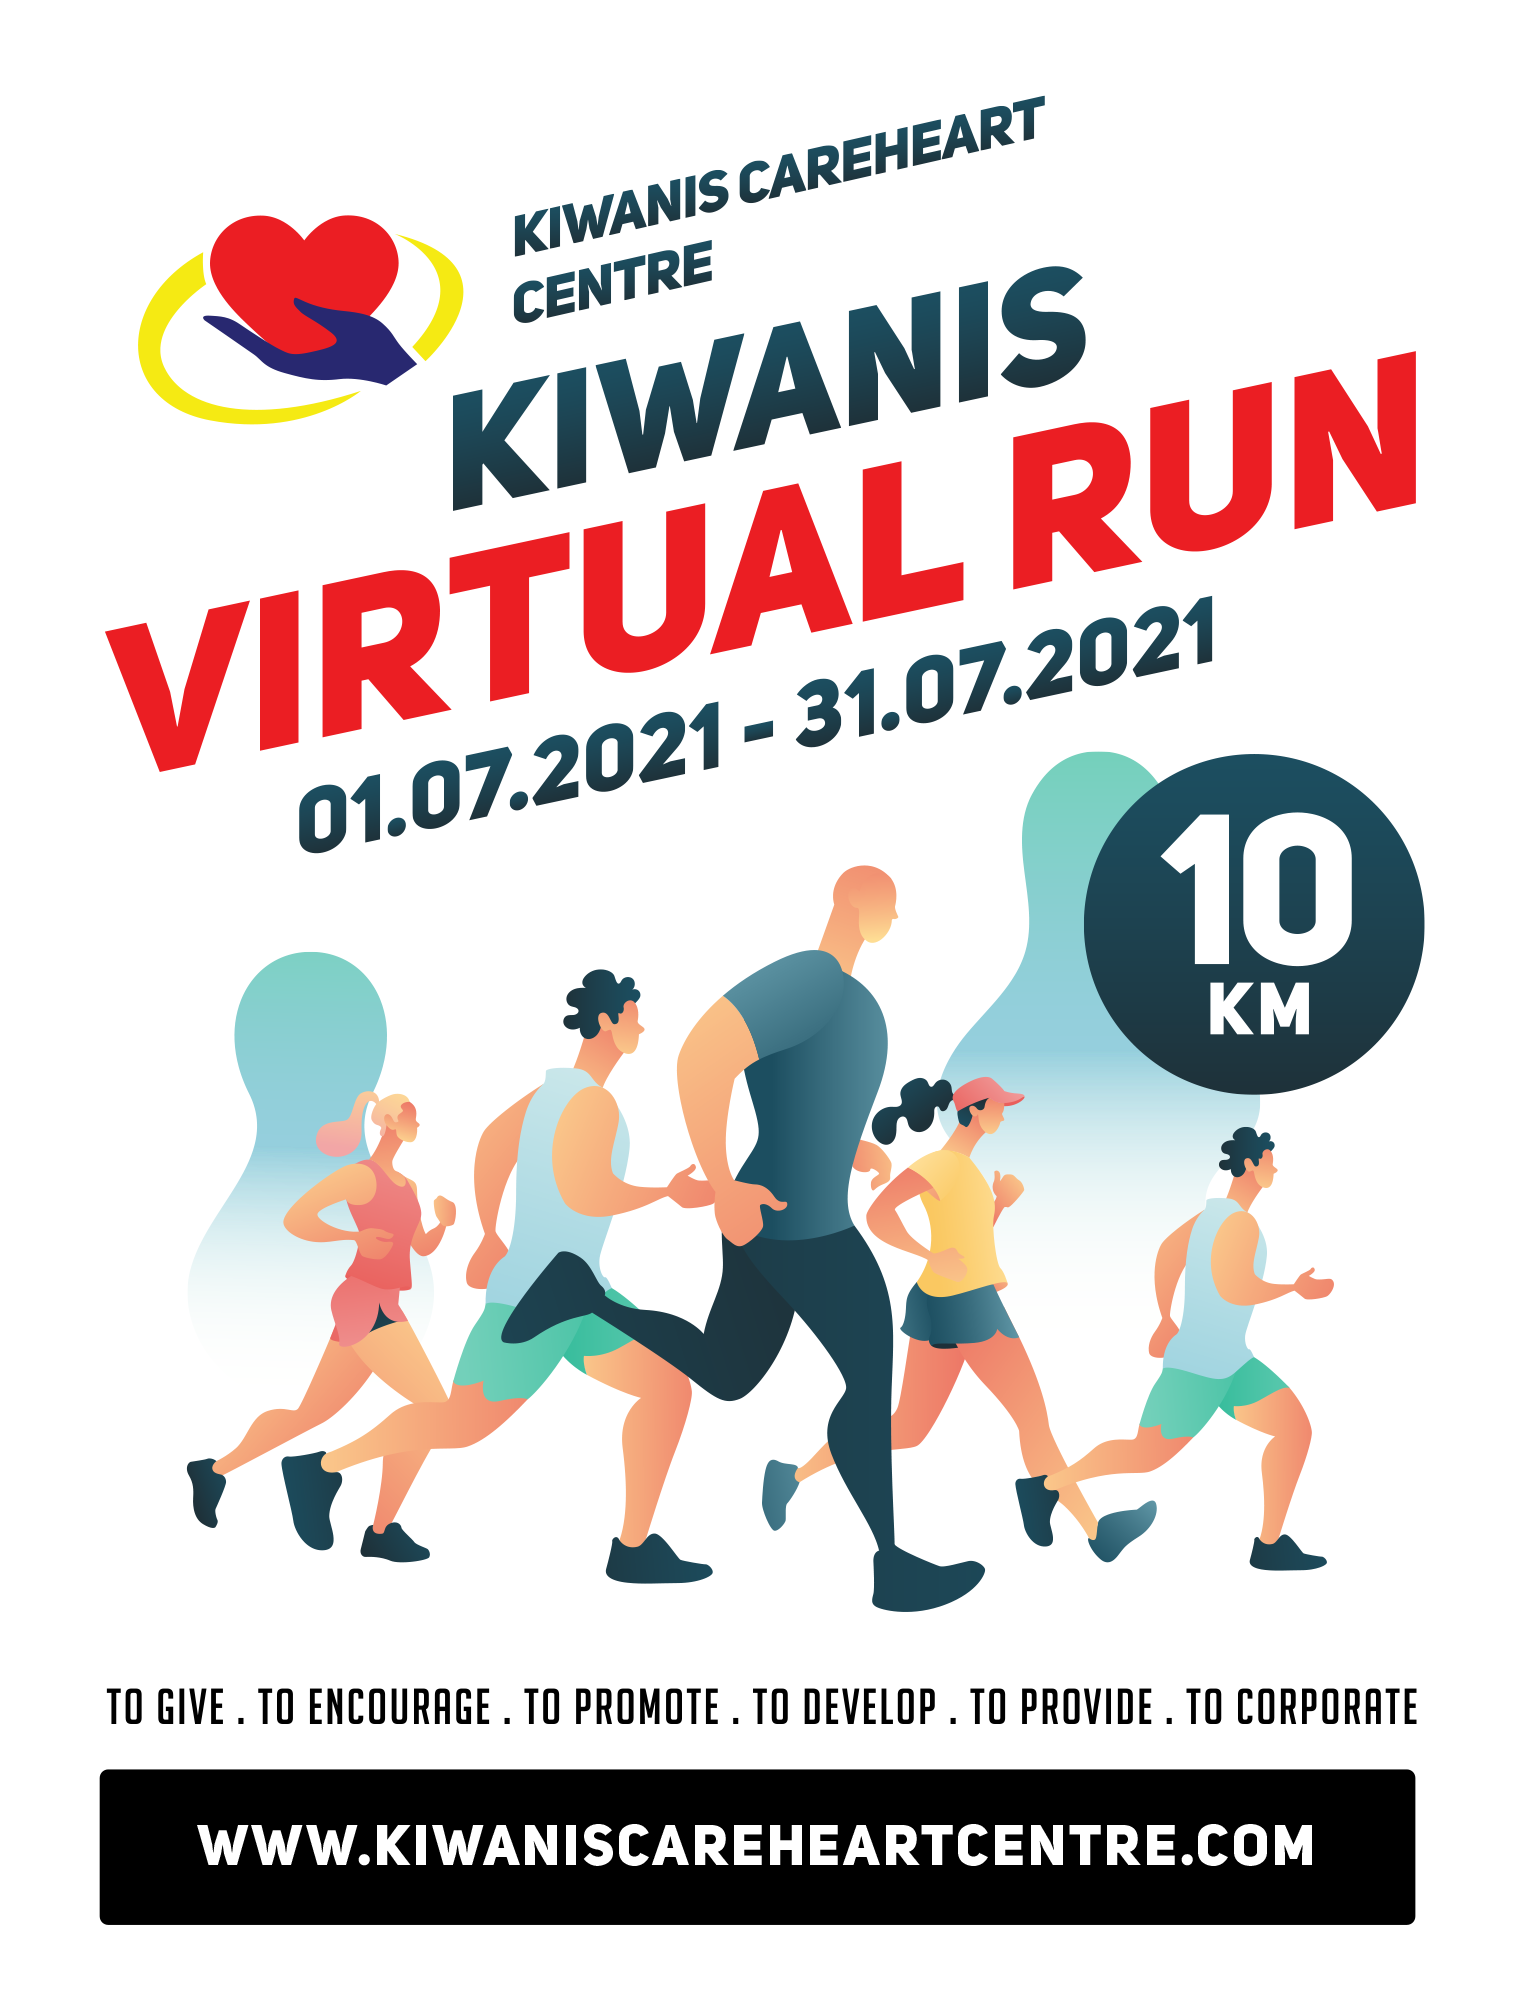 Kiwanis CareHeart Virtual Run 2021